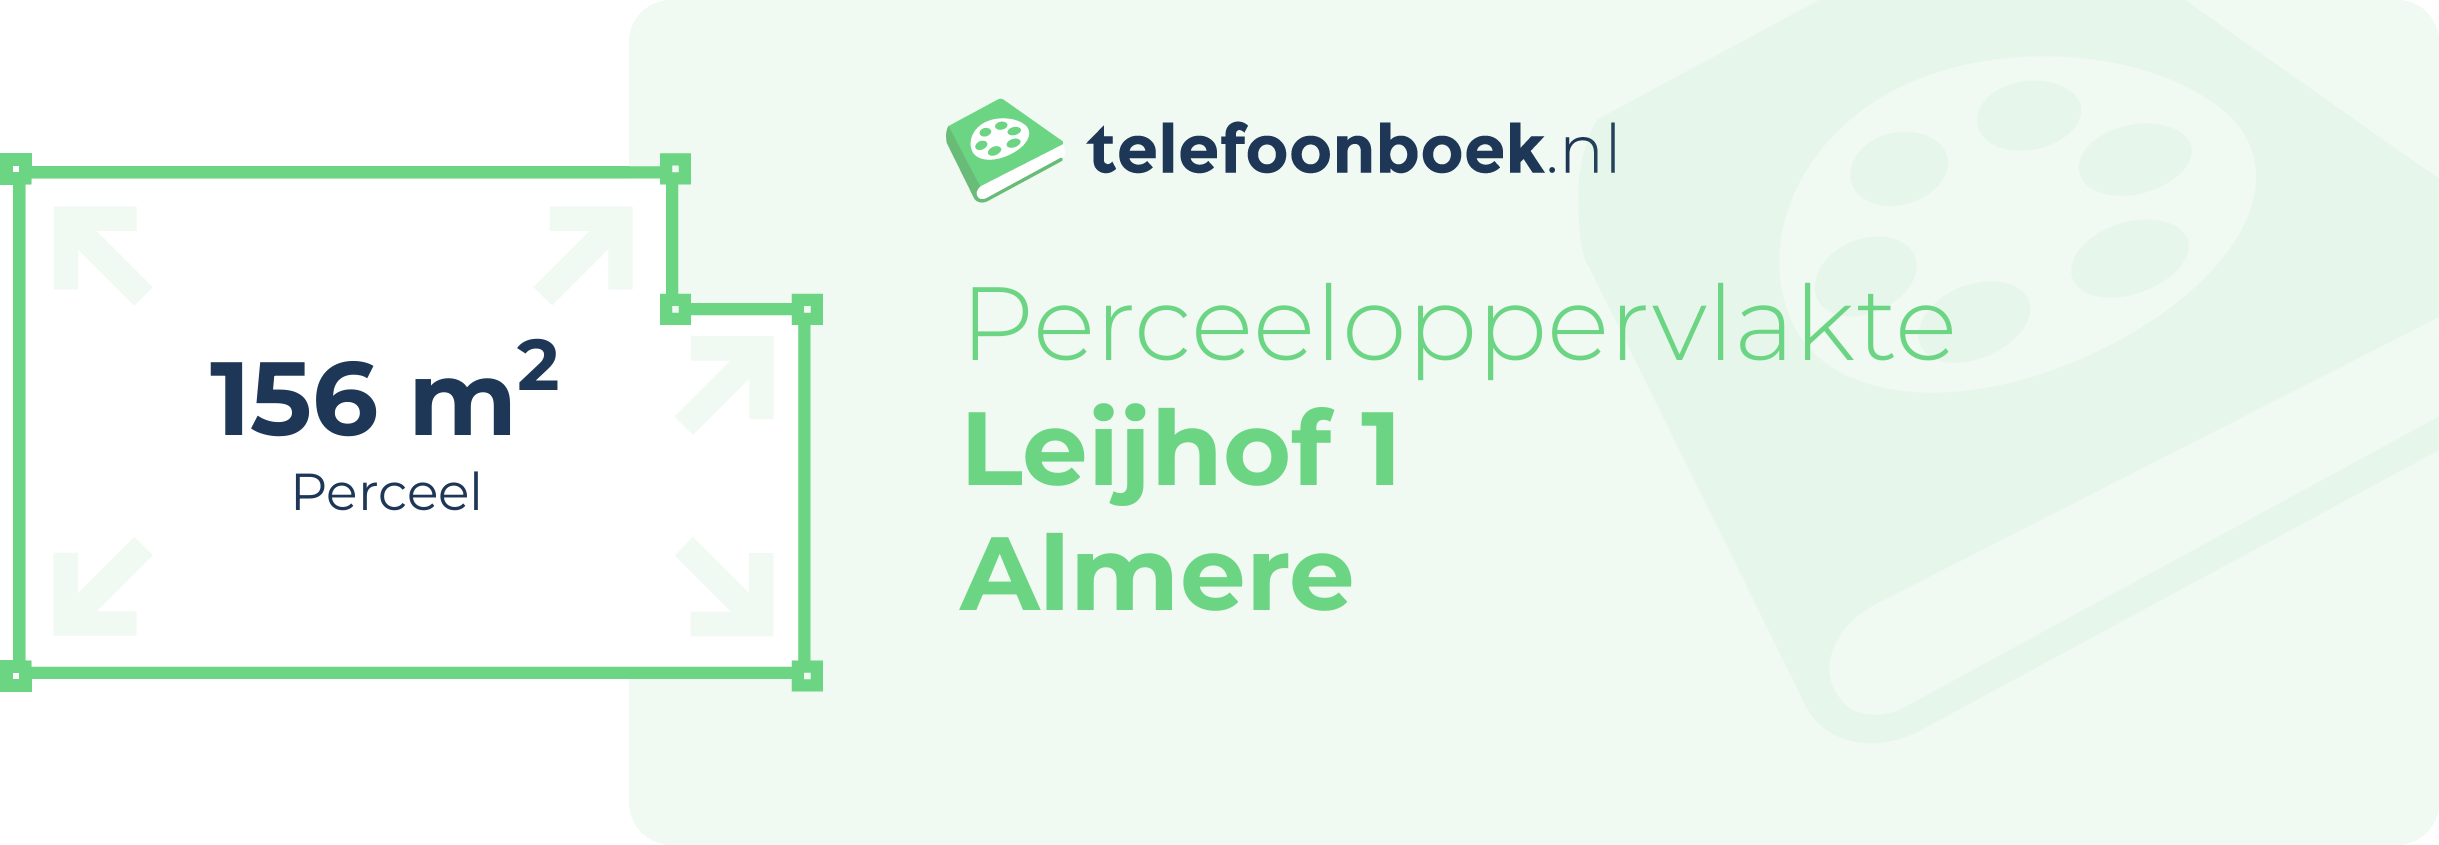 Perceeloppervlakte Leijhof 1 Almere